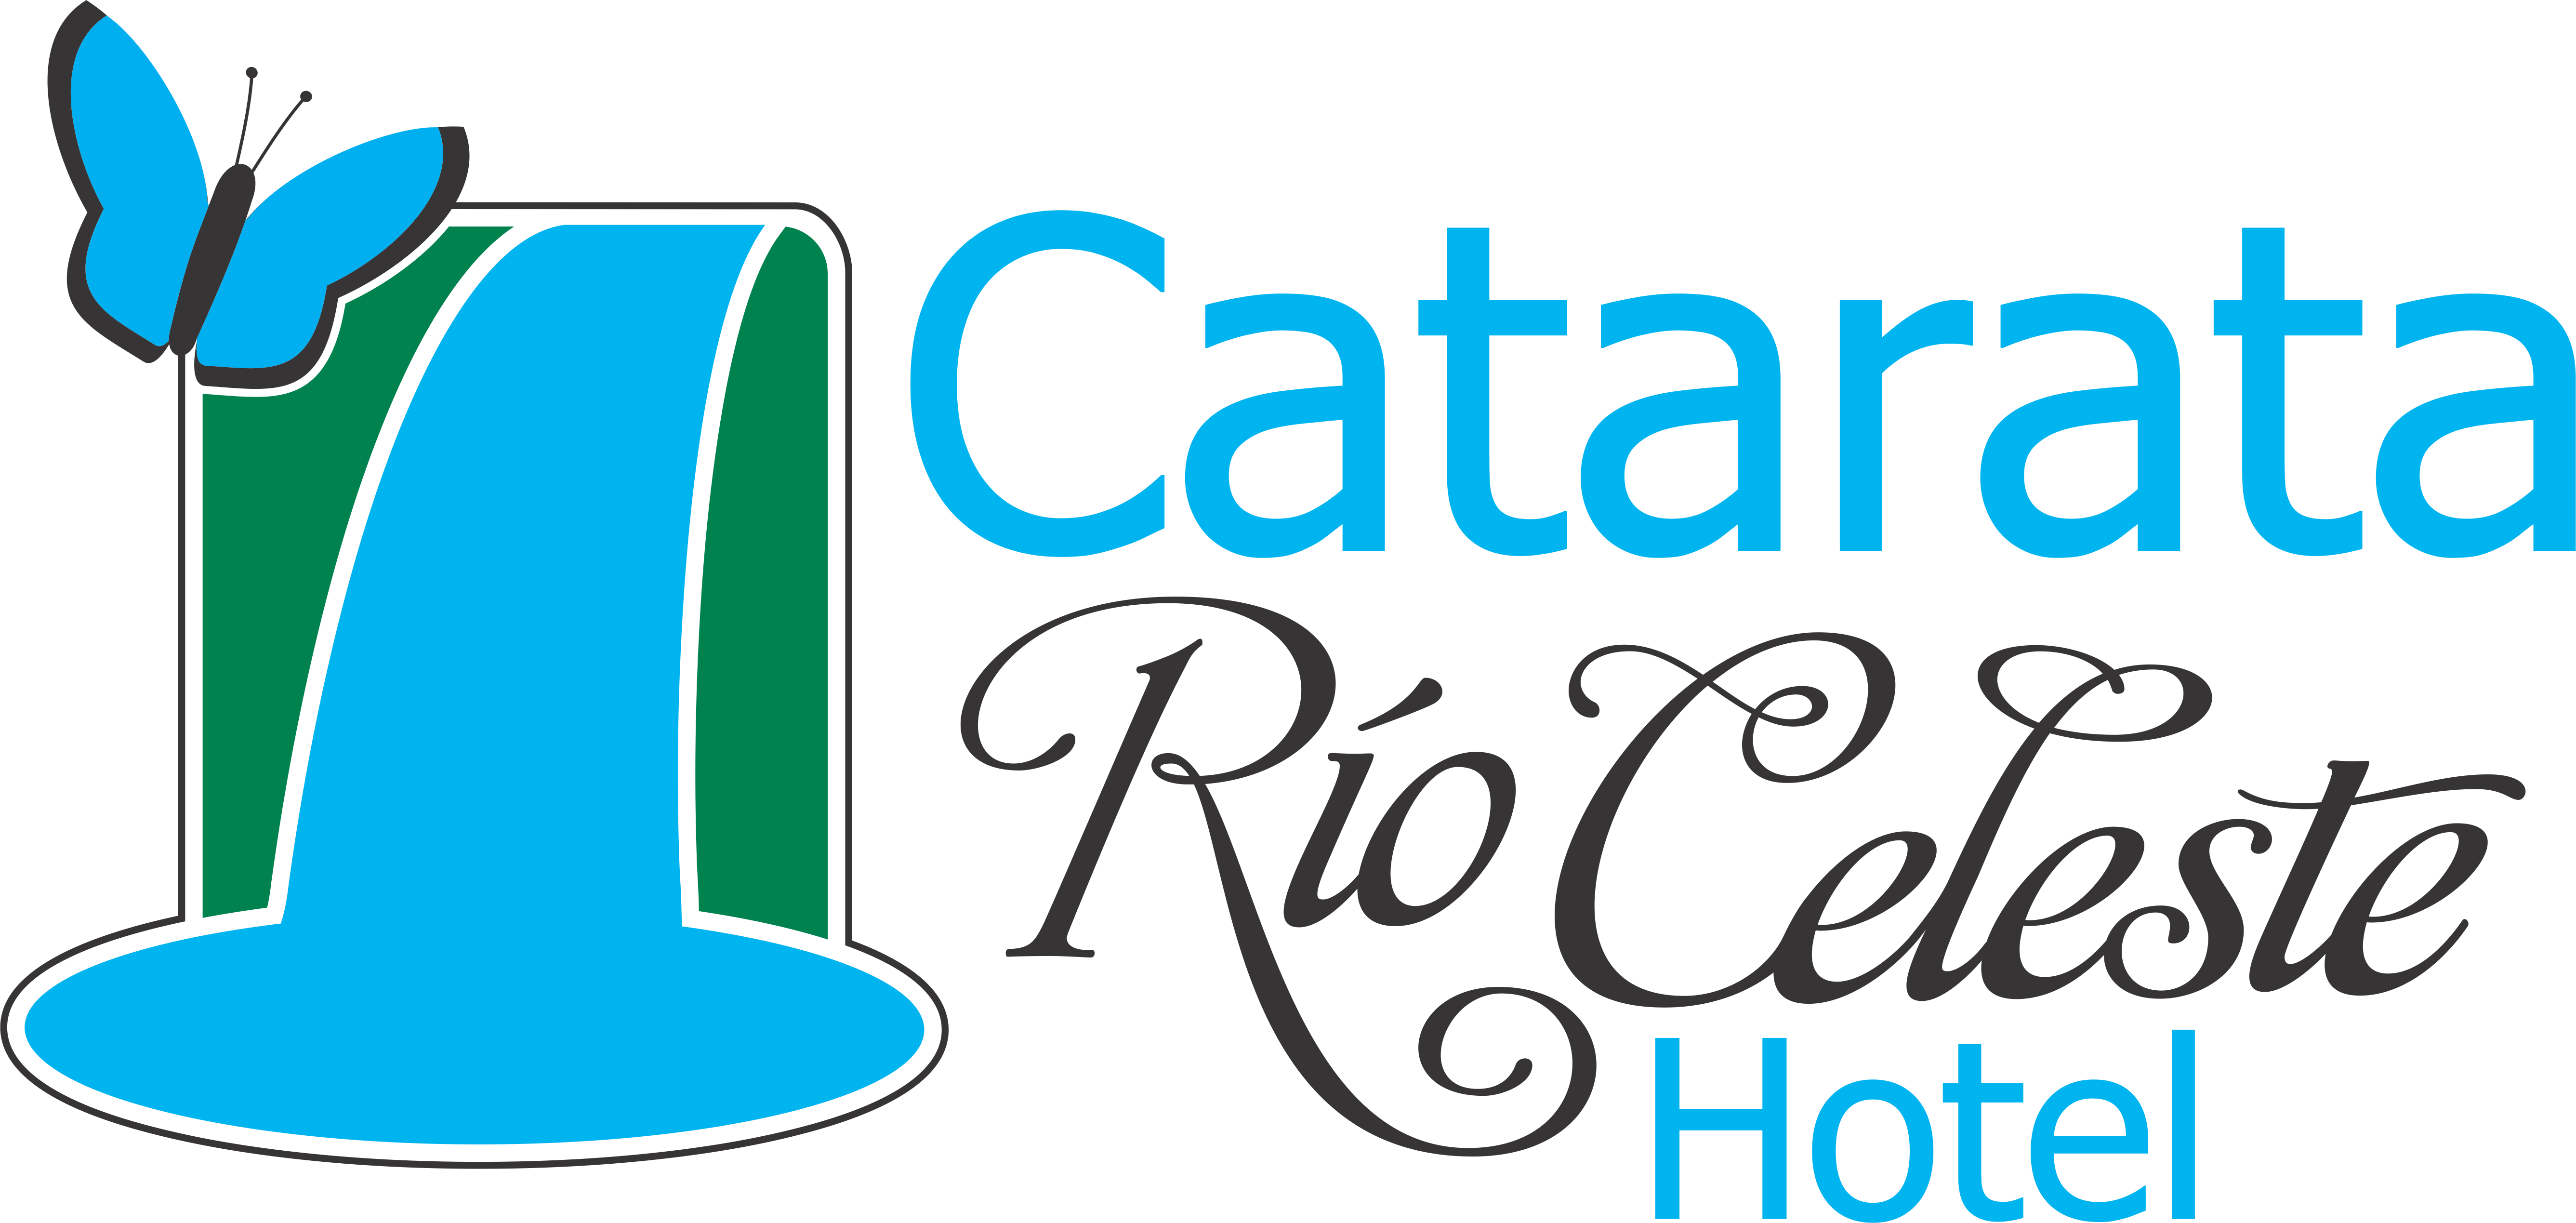 Catarata Rio Celeste - No Secondhand Rose: My Name Is Forshia (5347x2538)